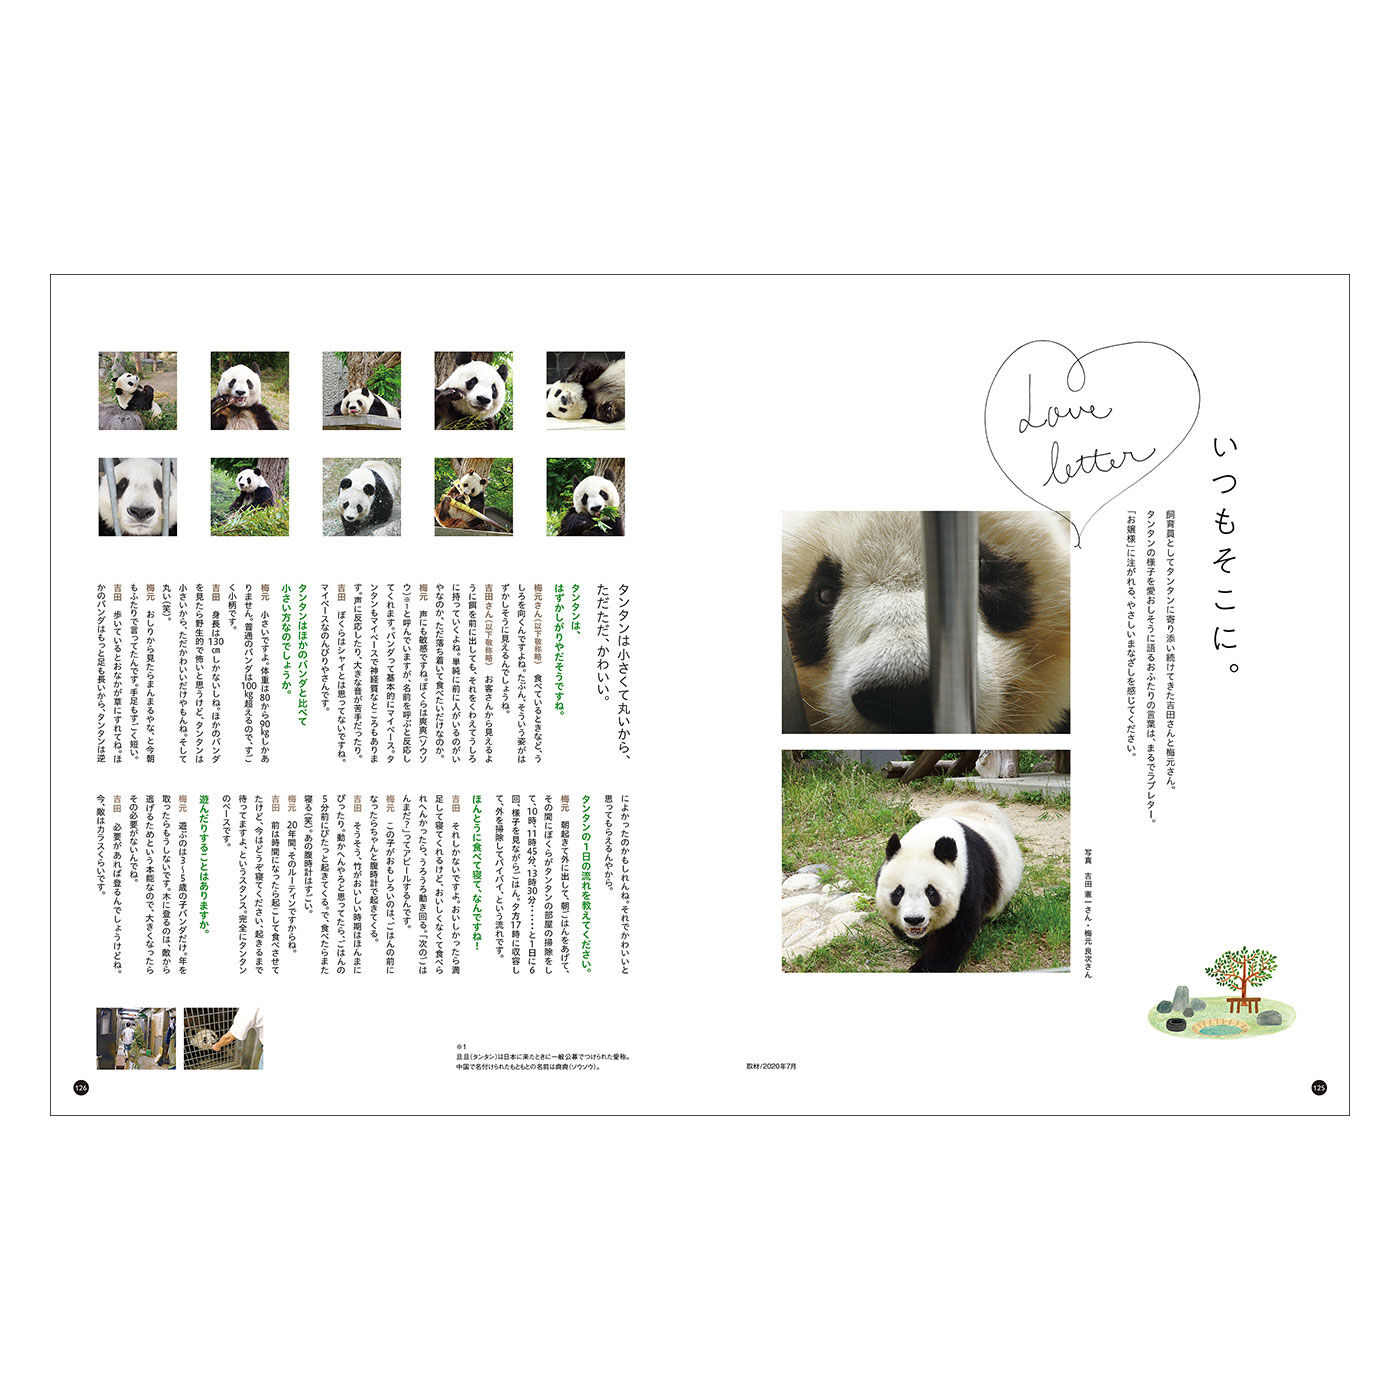 Real Stock|YOU+MORE!　写真集『神戸市立王子動物園のシャイなパンダ　タンタン』|飼育員さんにタンタンについてお聞きしたインタビューページはまるでラブレターのよう。